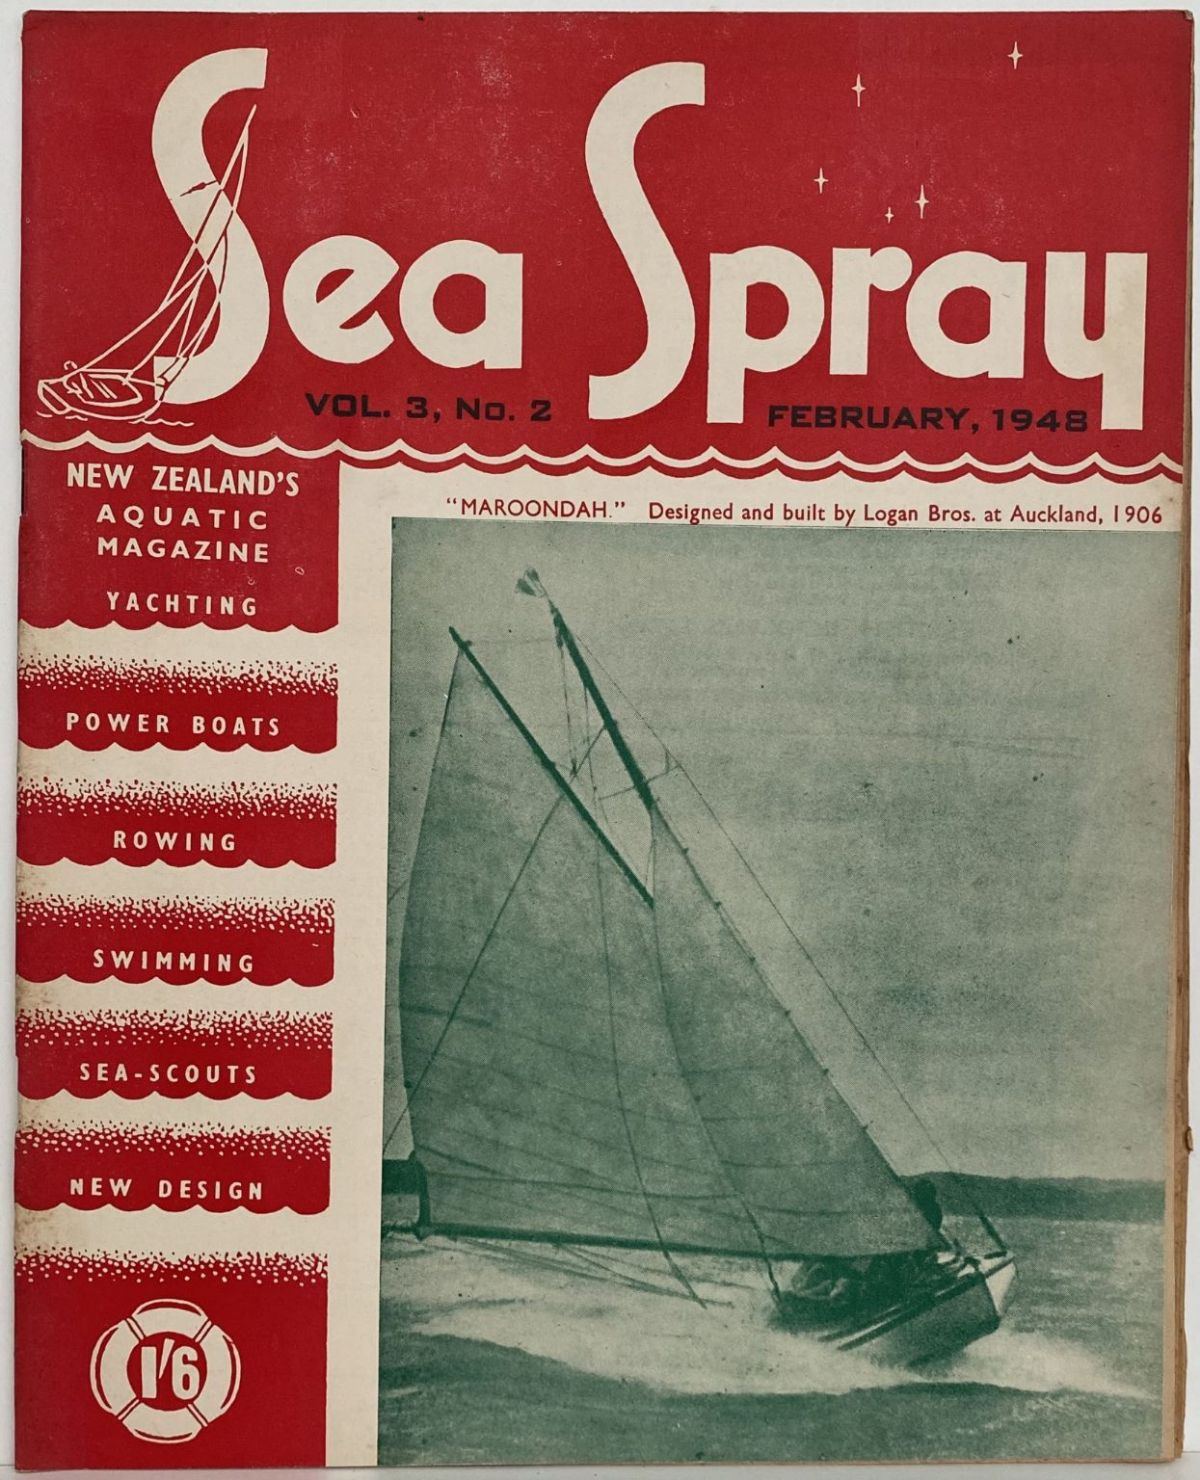 VINTAGE MAGAZINE: Sea Spray - Vol. 3, No. 2 - February 1948